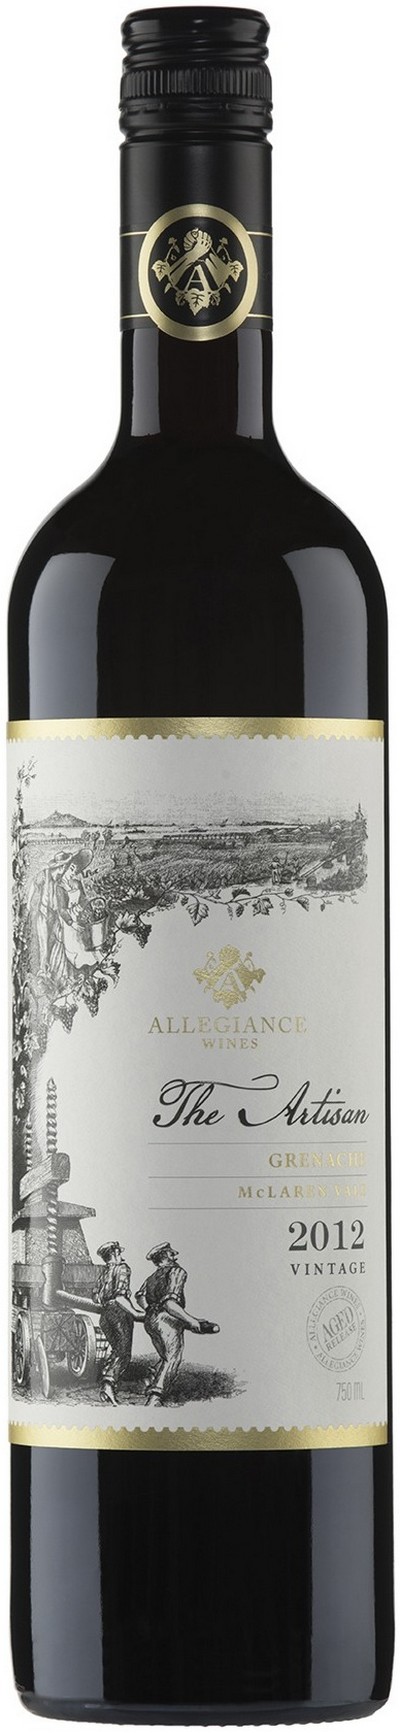 allegiance-wines-the-artisan-aged-release-mclaren-vale-grenache-2012